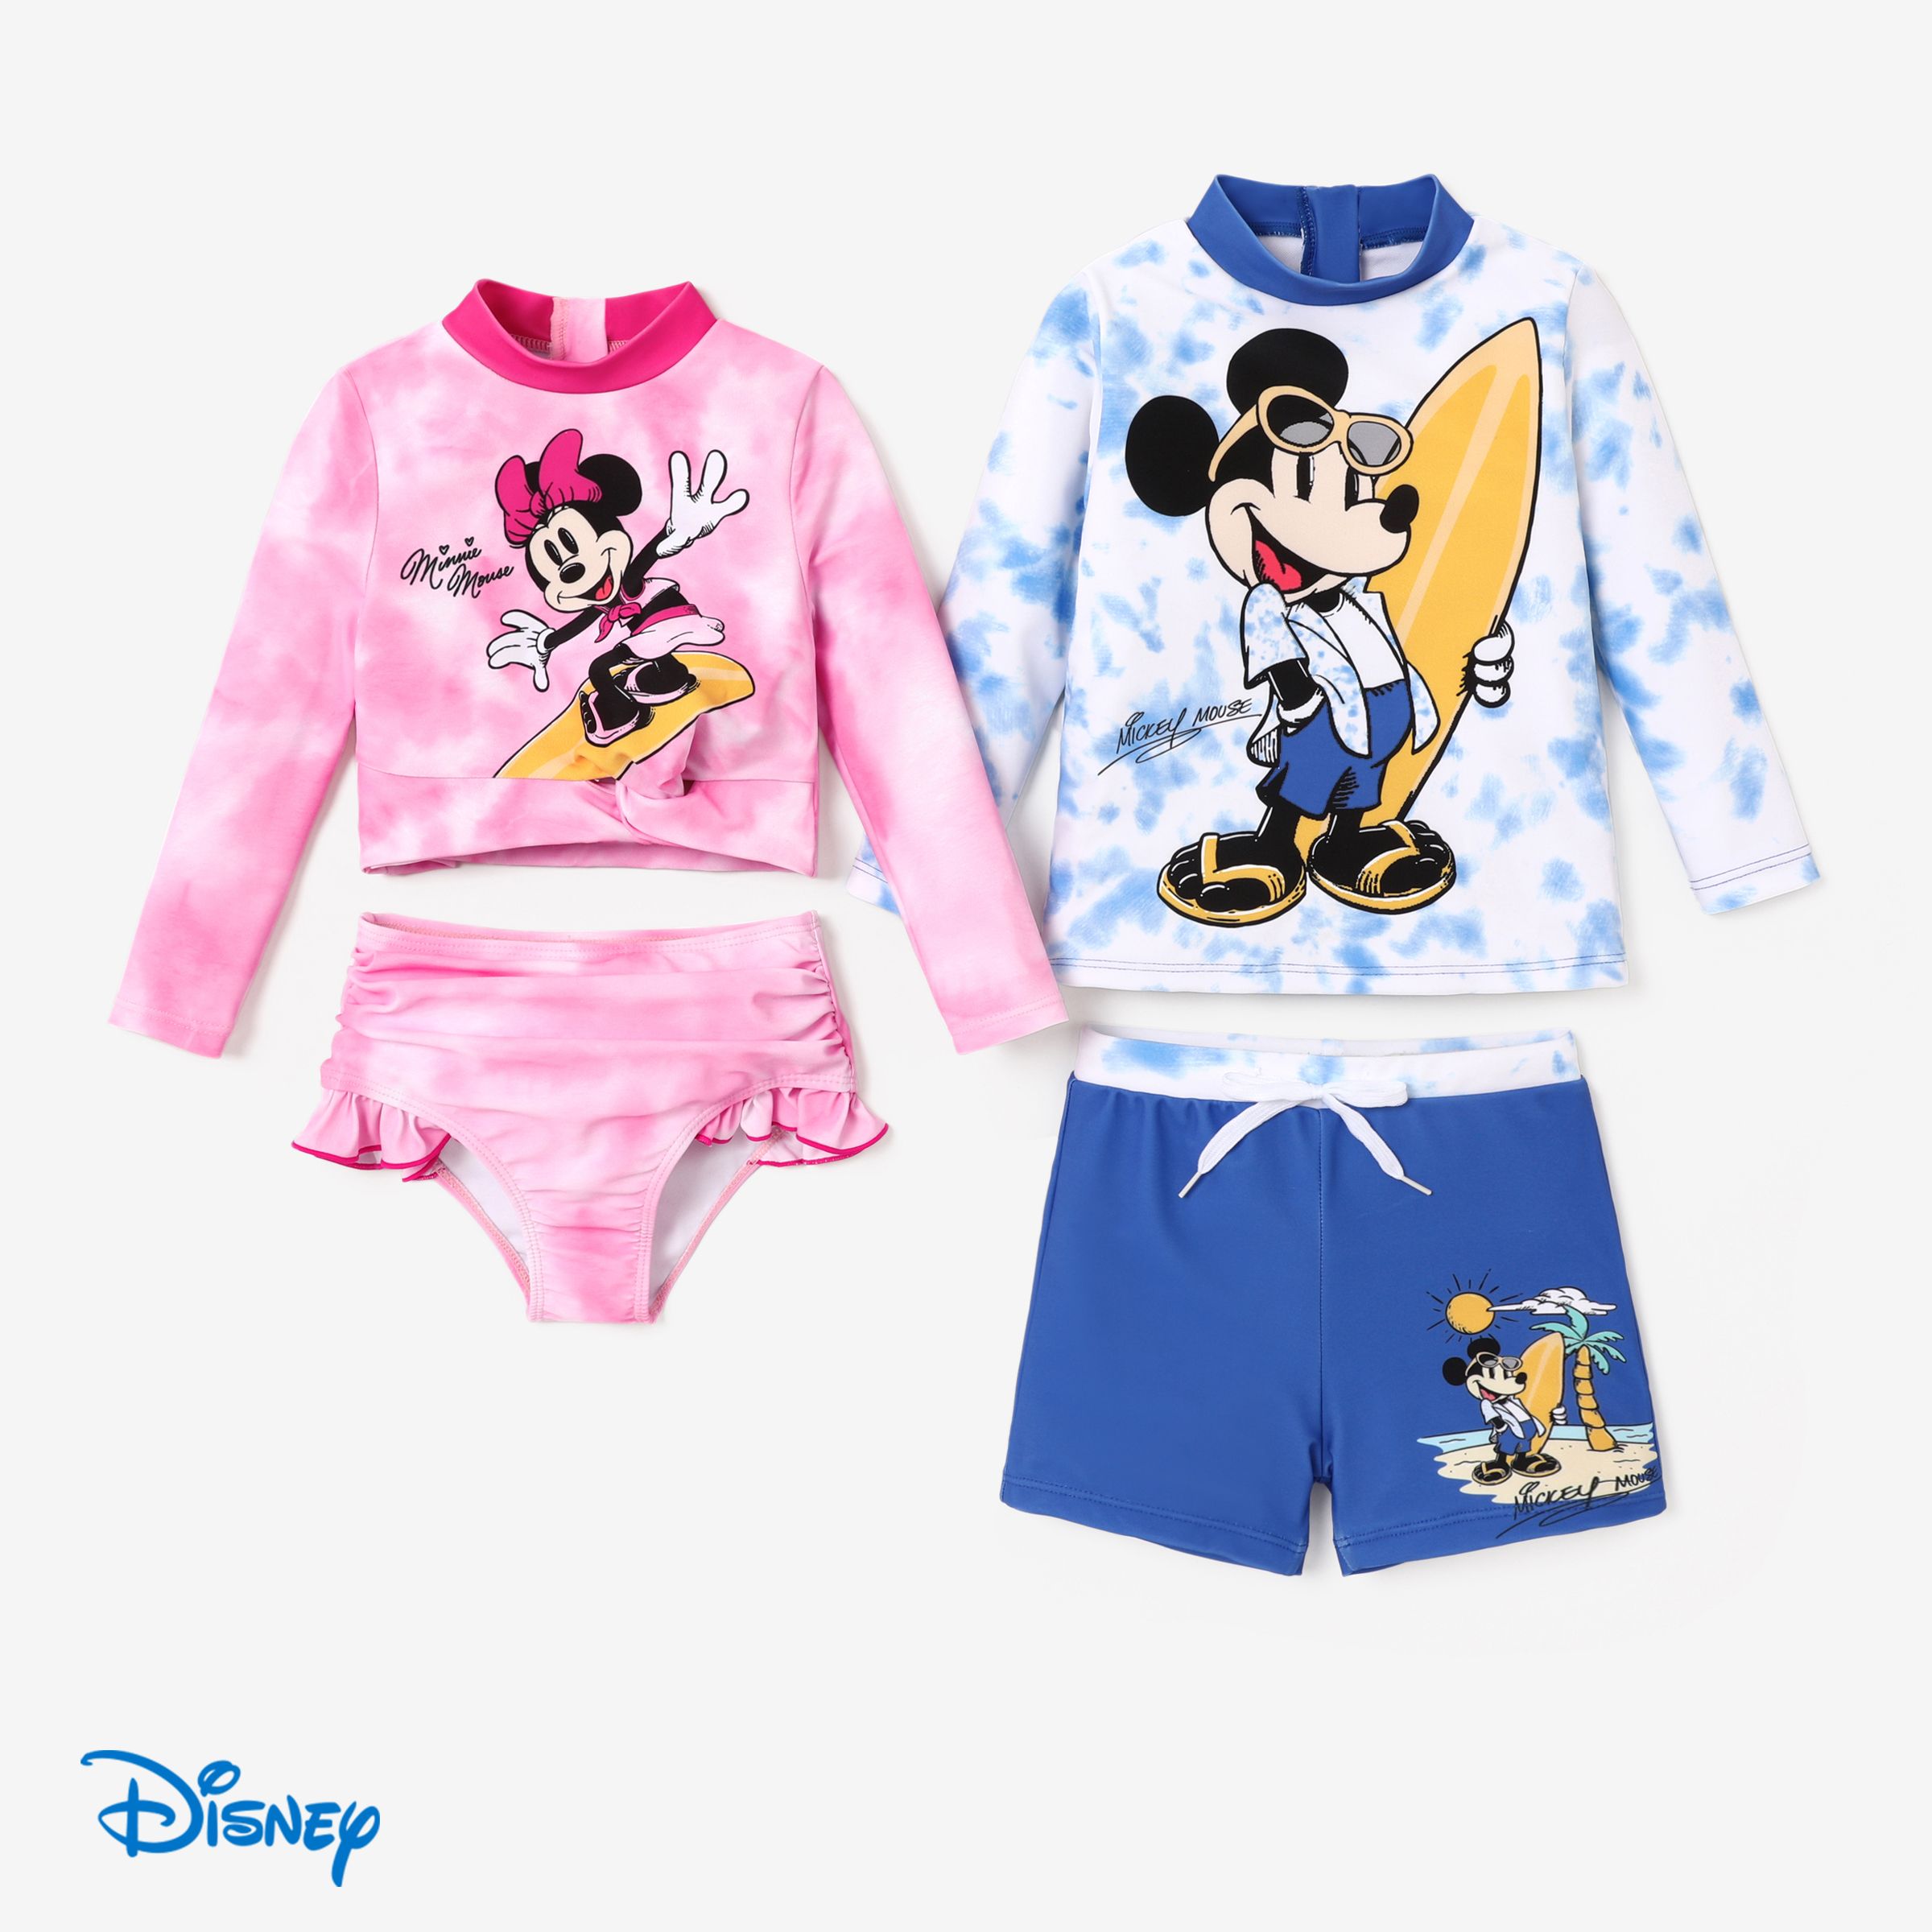 迪士尼米奇和米妮兒童男孩/女孩扎染印花滑板圖案泳裝套裝